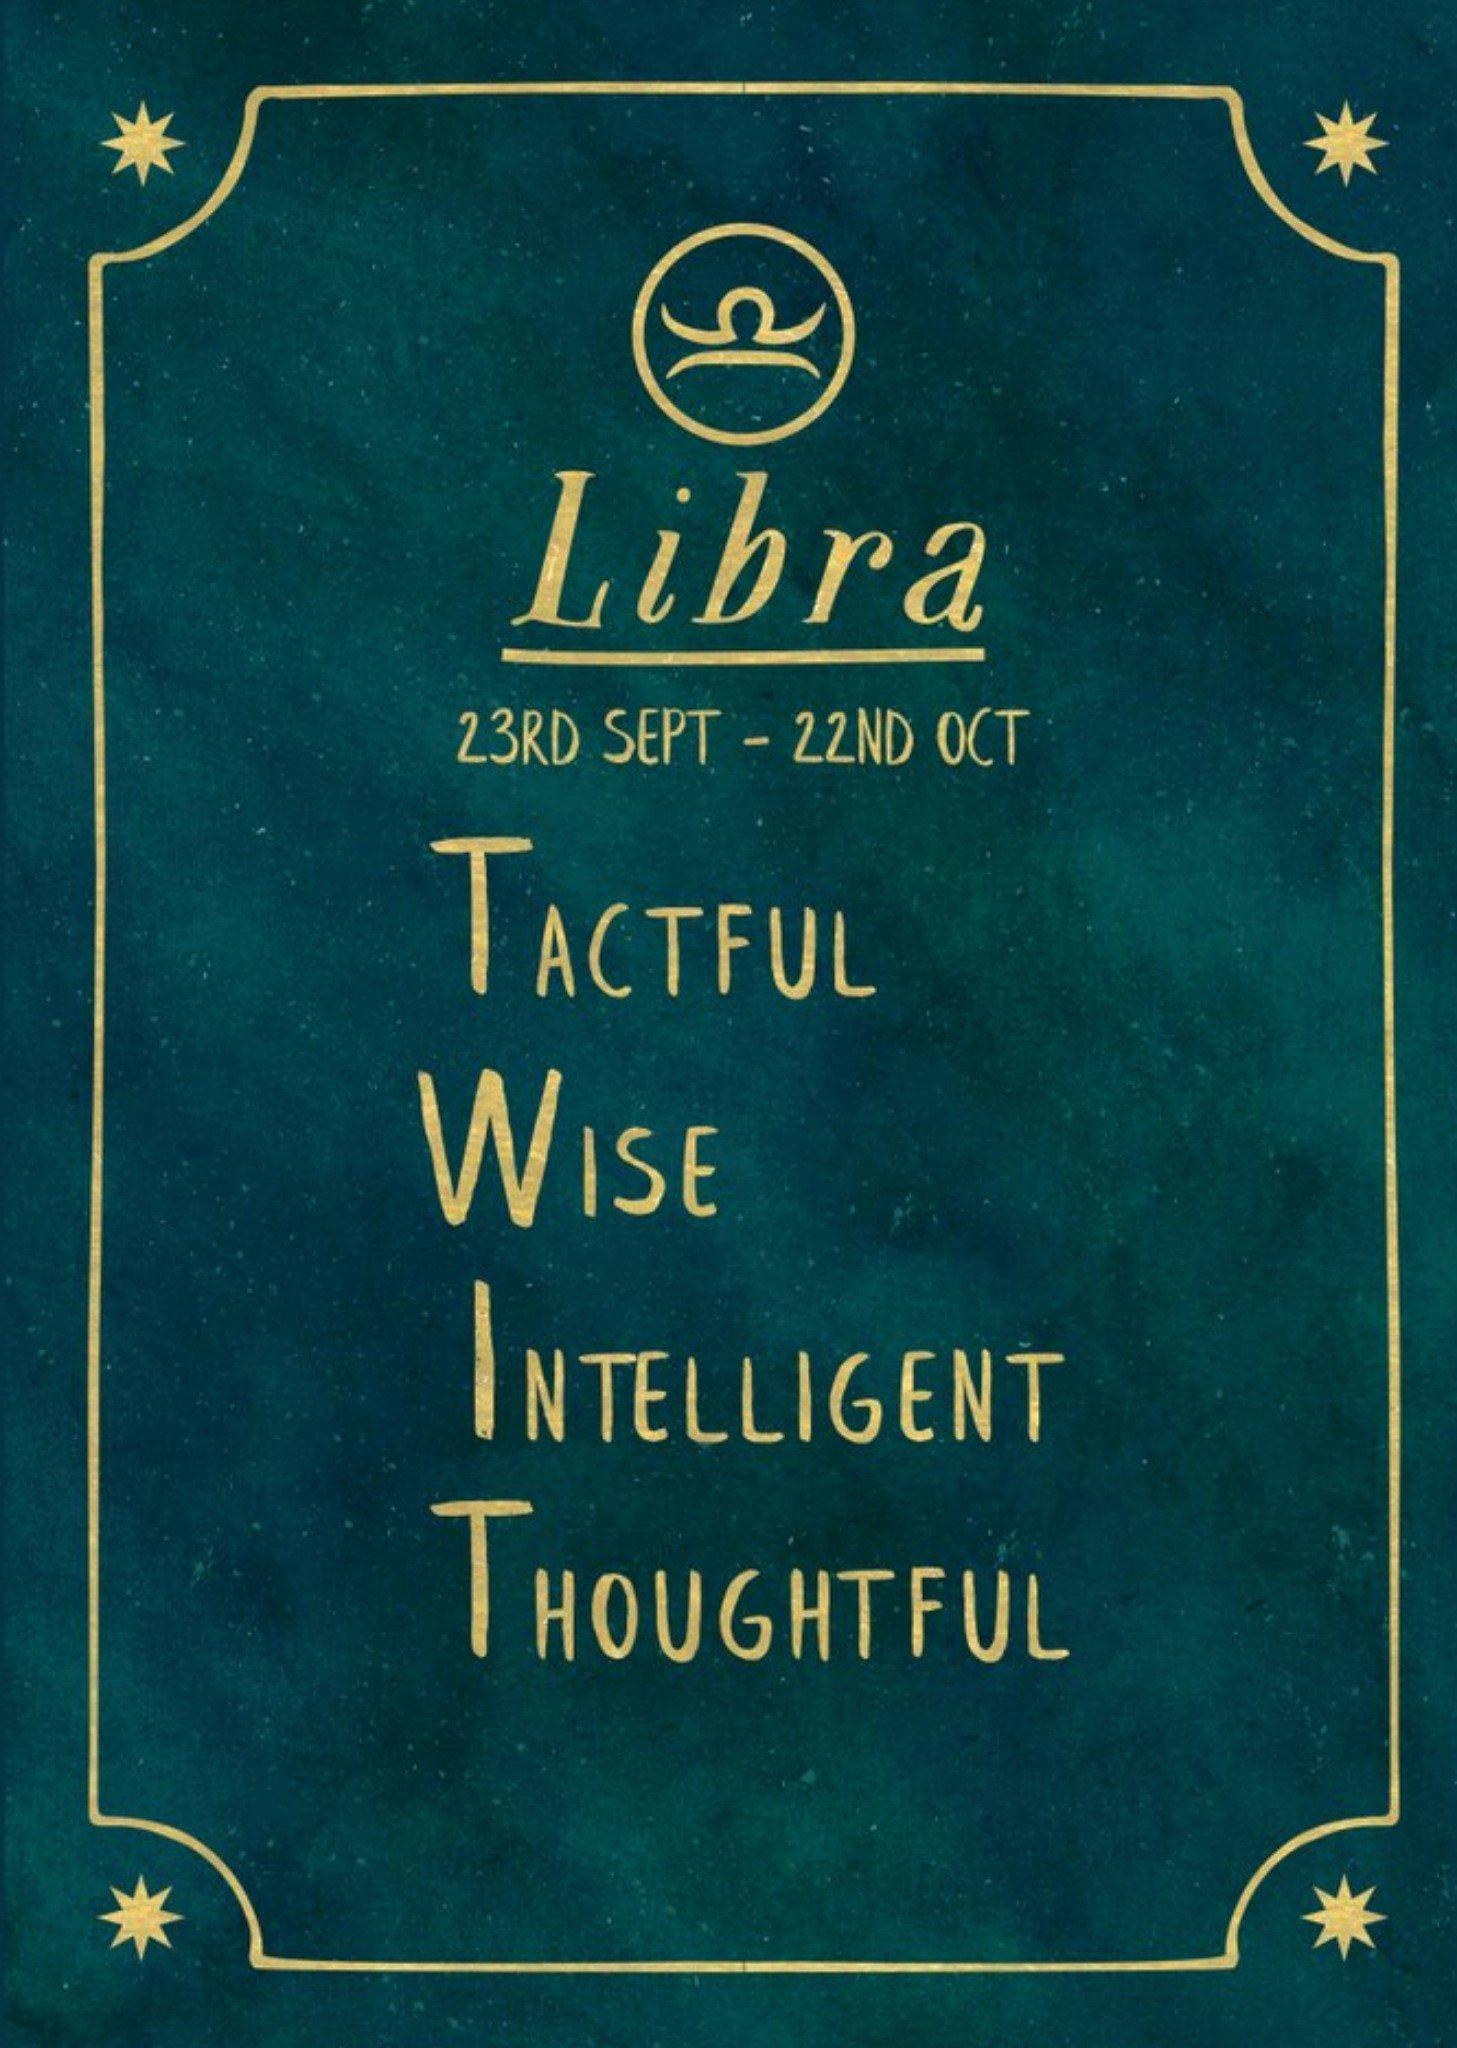 Moonpig Funny Rude Horoscope Birthday Card - Libra, Large